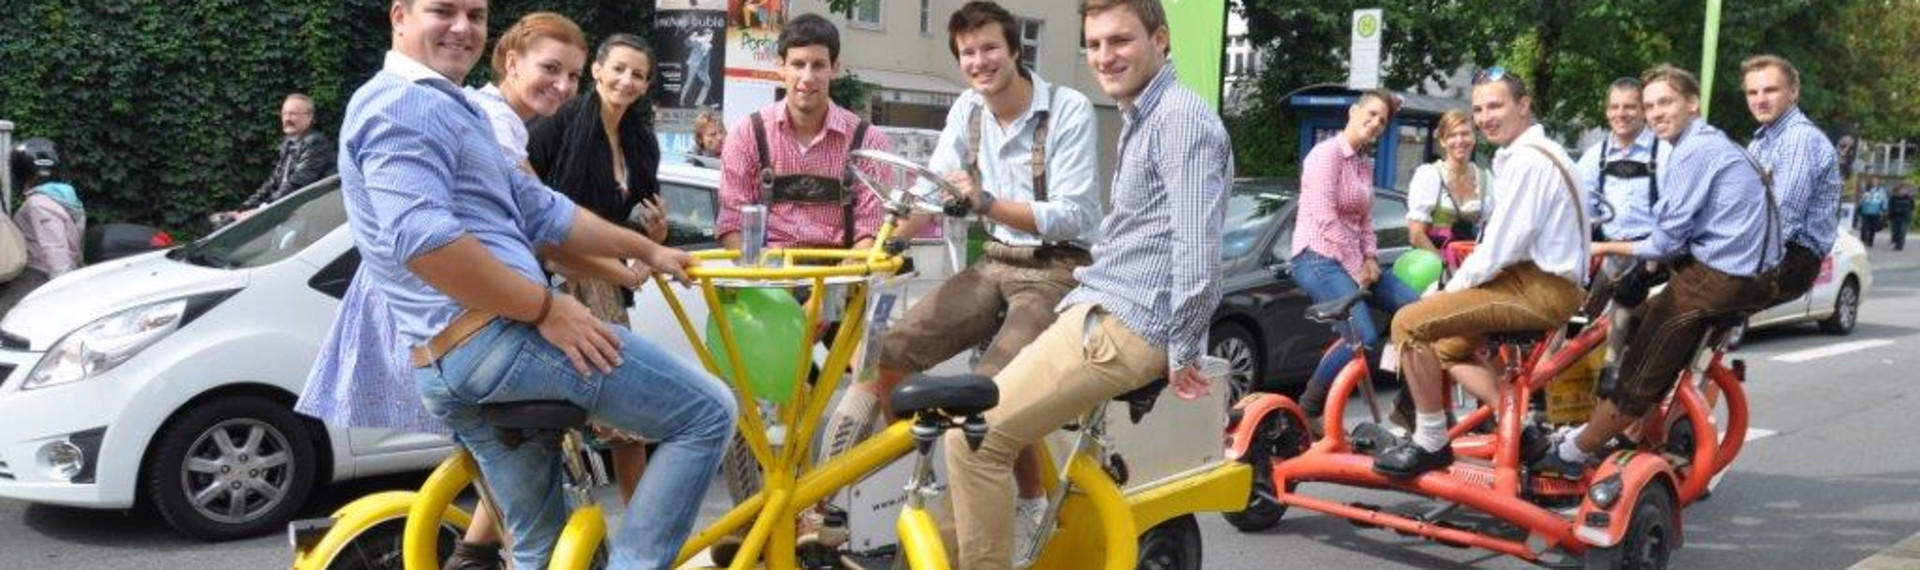 Konferenz-Bike München | | Jetzt mit Pissup Reisen buchen!